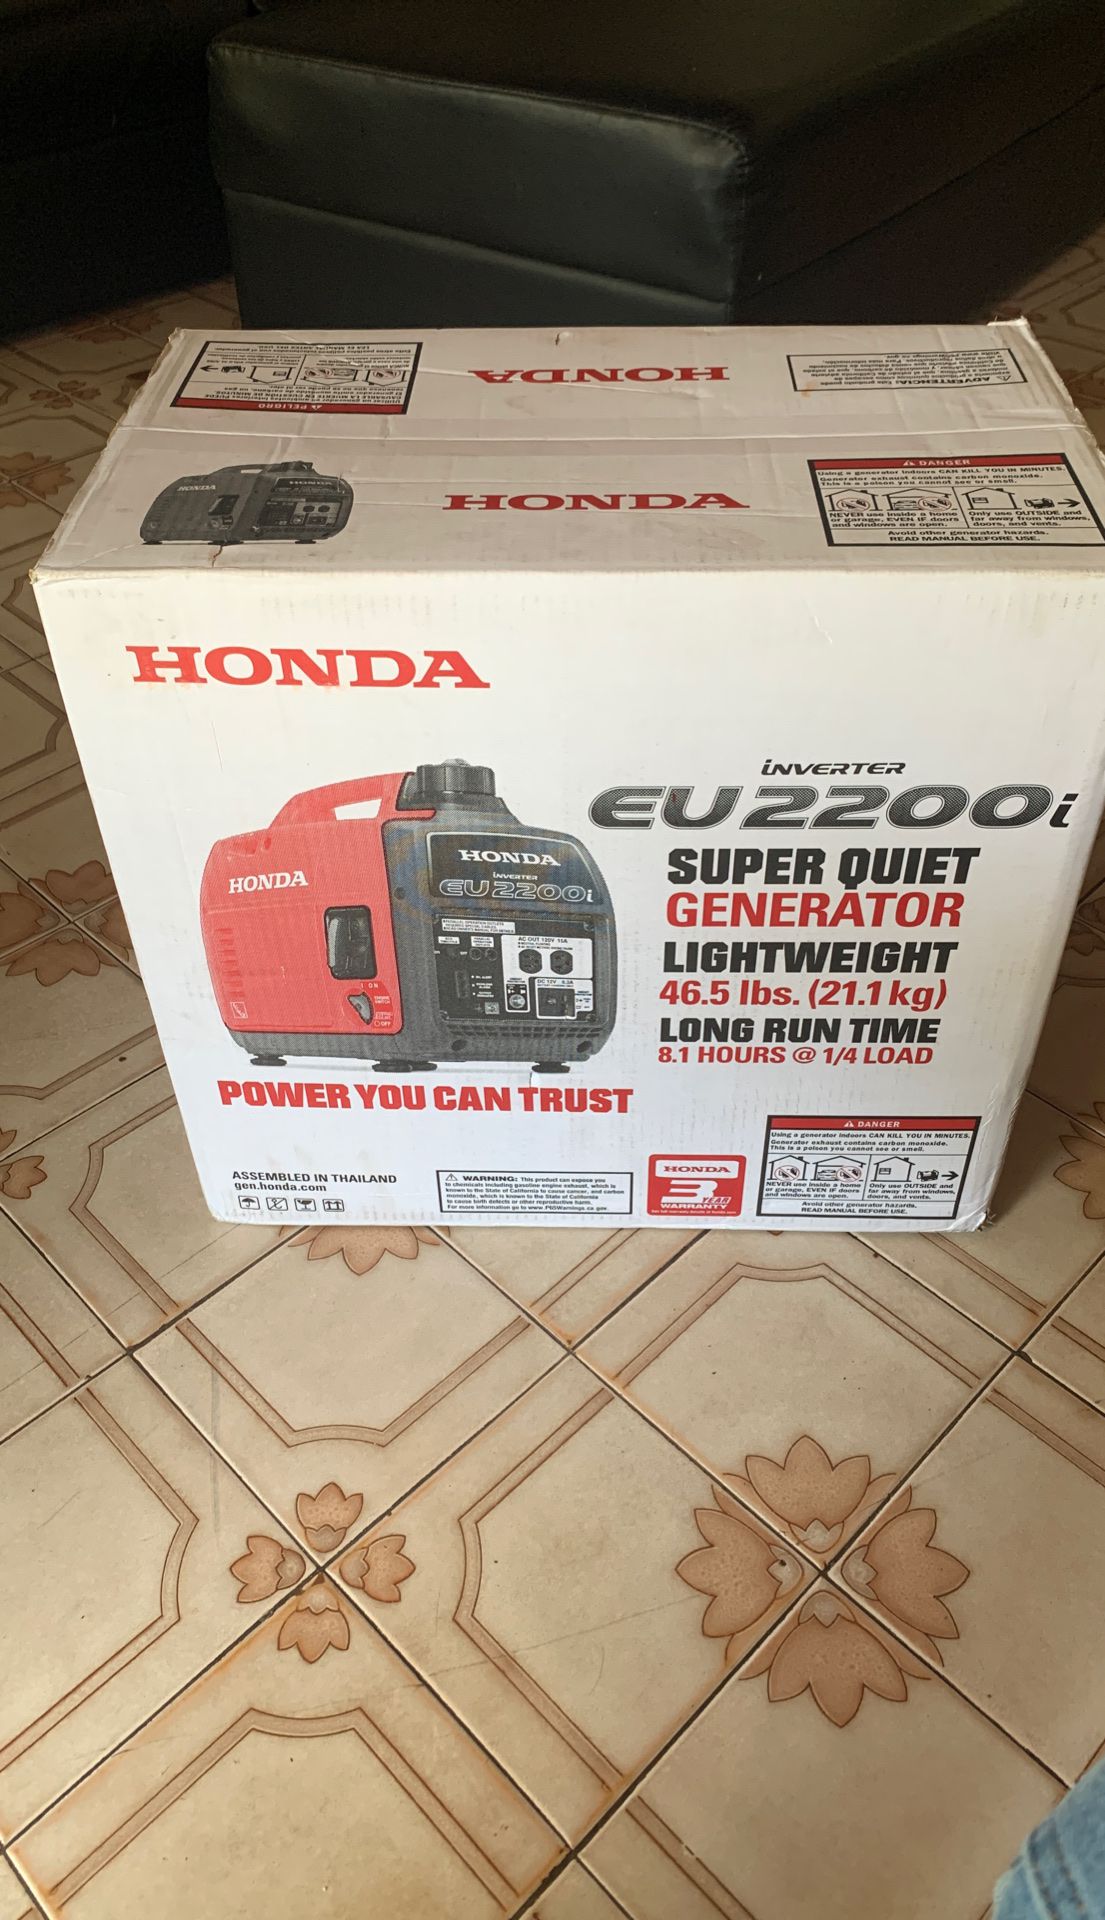 Honda EV2200 Super Quite Generator